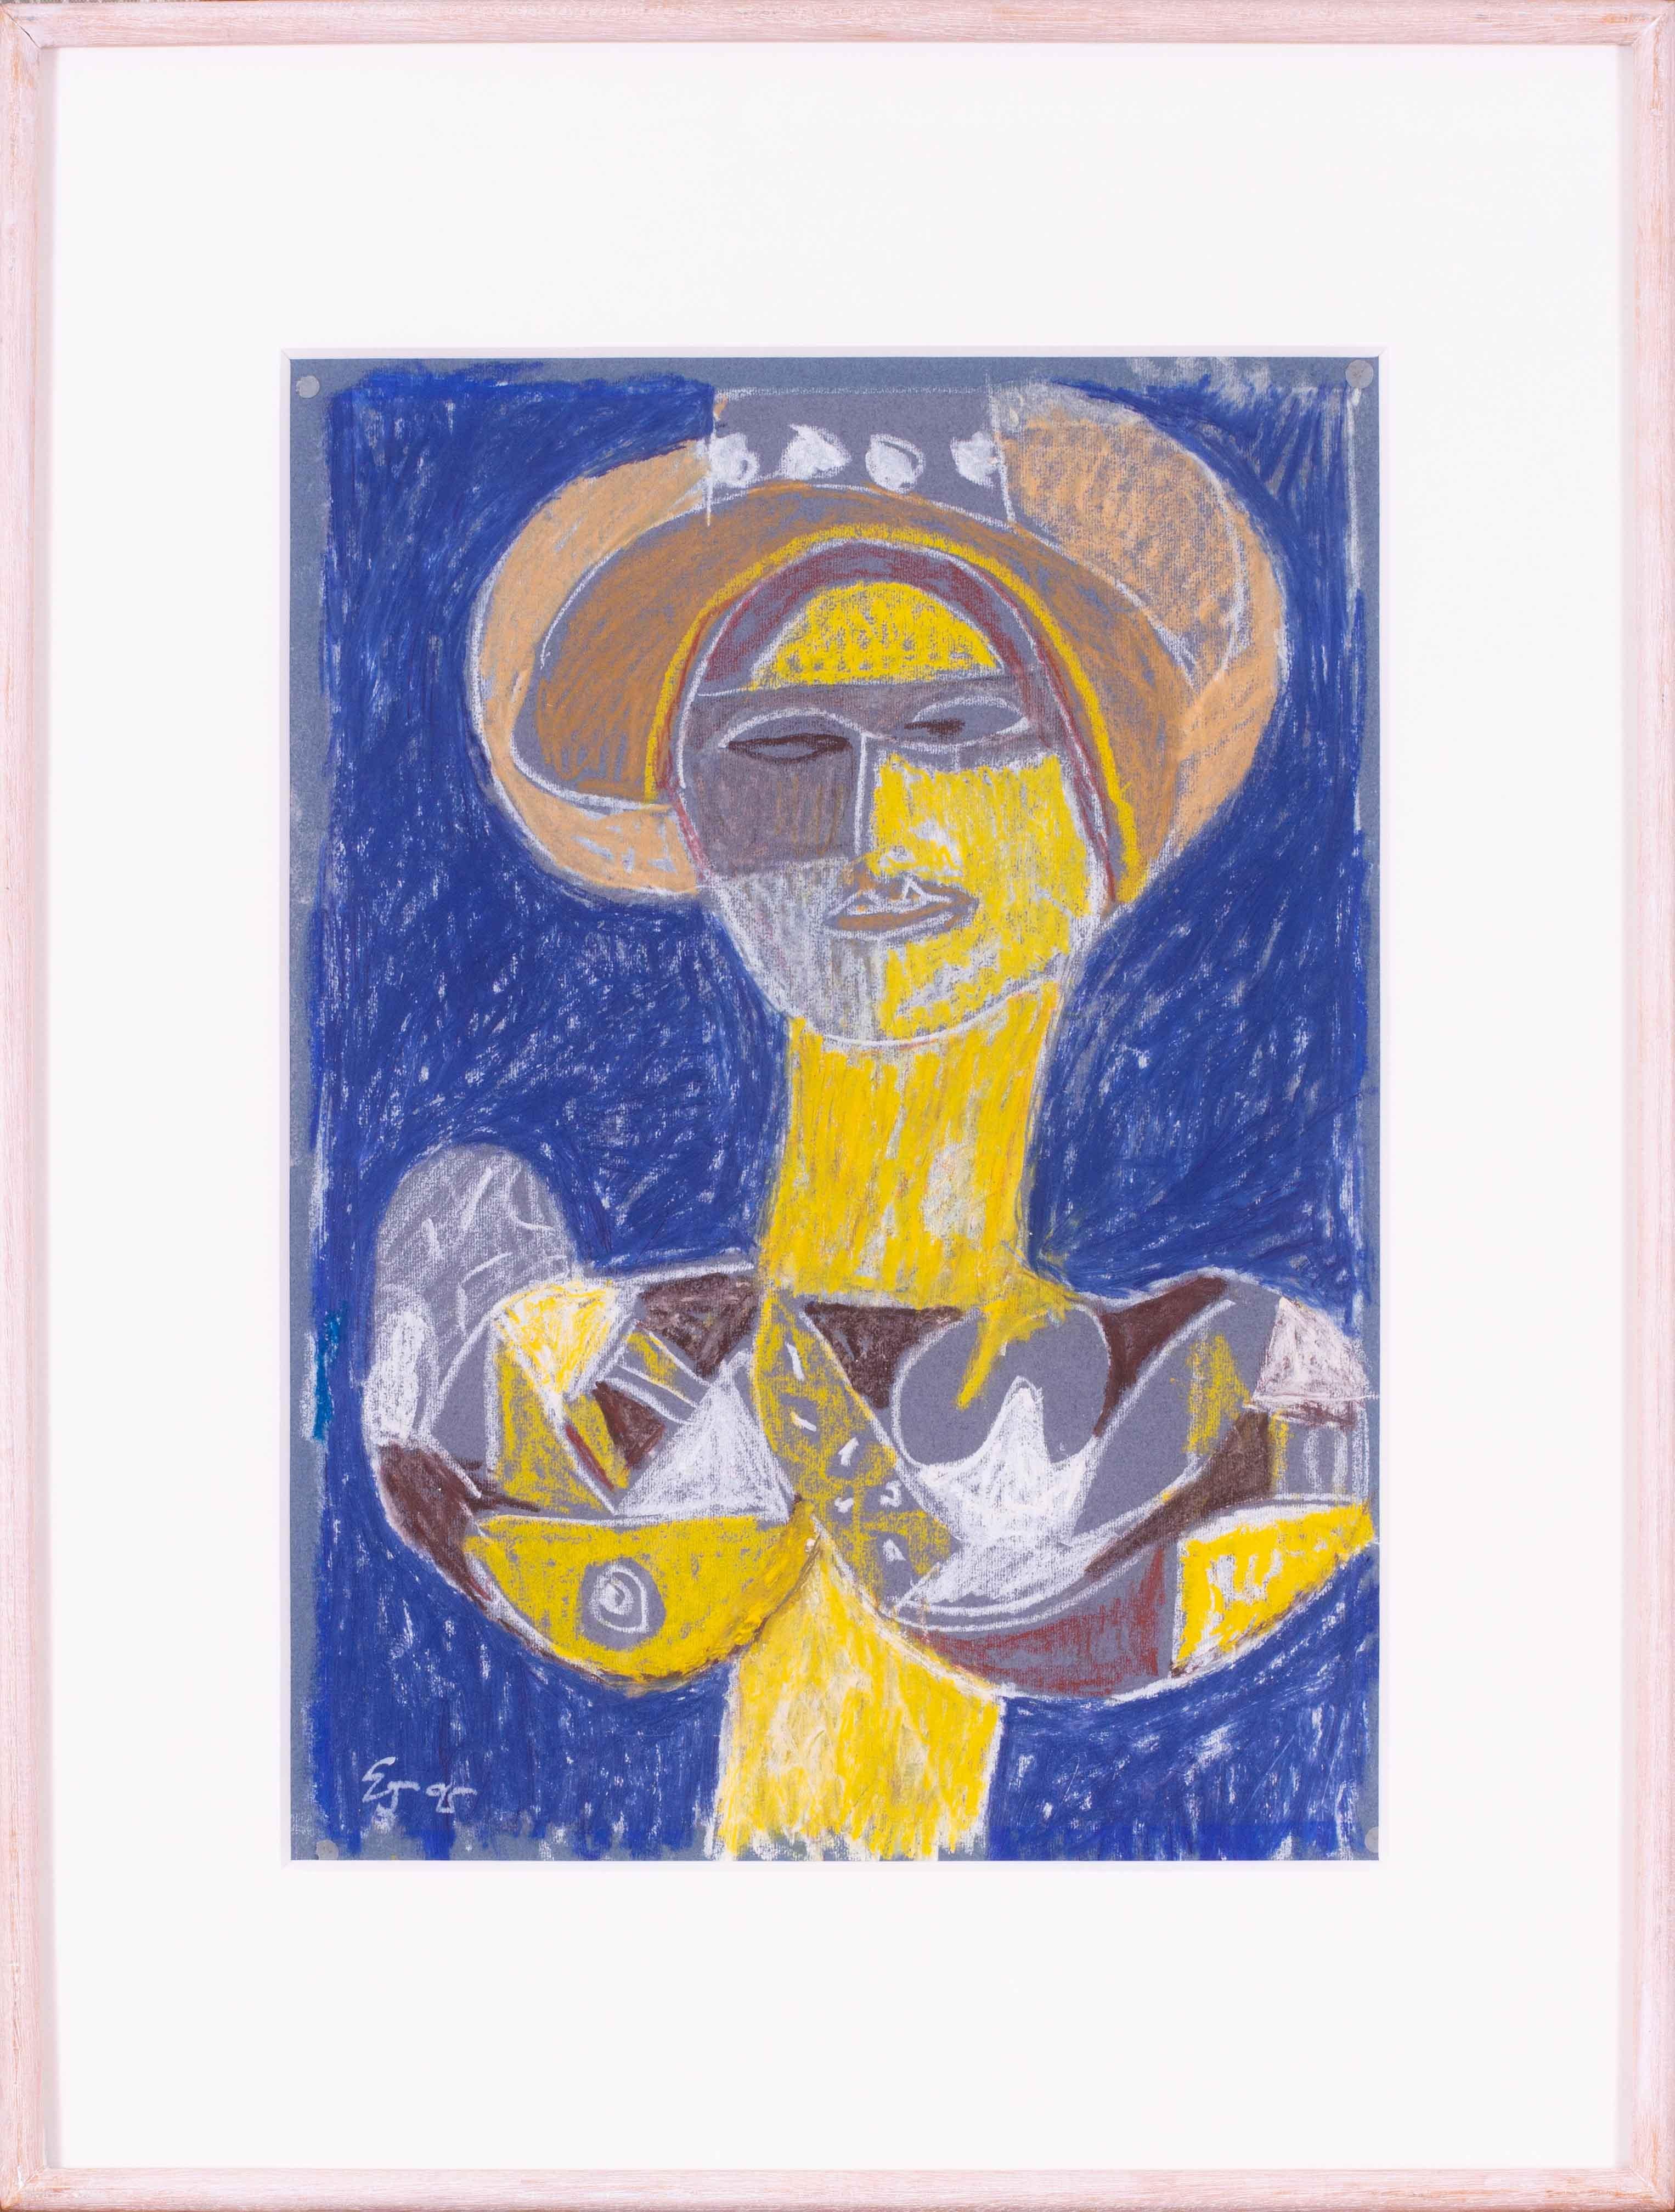 Abstrakte weibliche Figur in Blau und Gelb des modernen britischen Künstlers des 20. Jahrhunderts, Ewart Johns